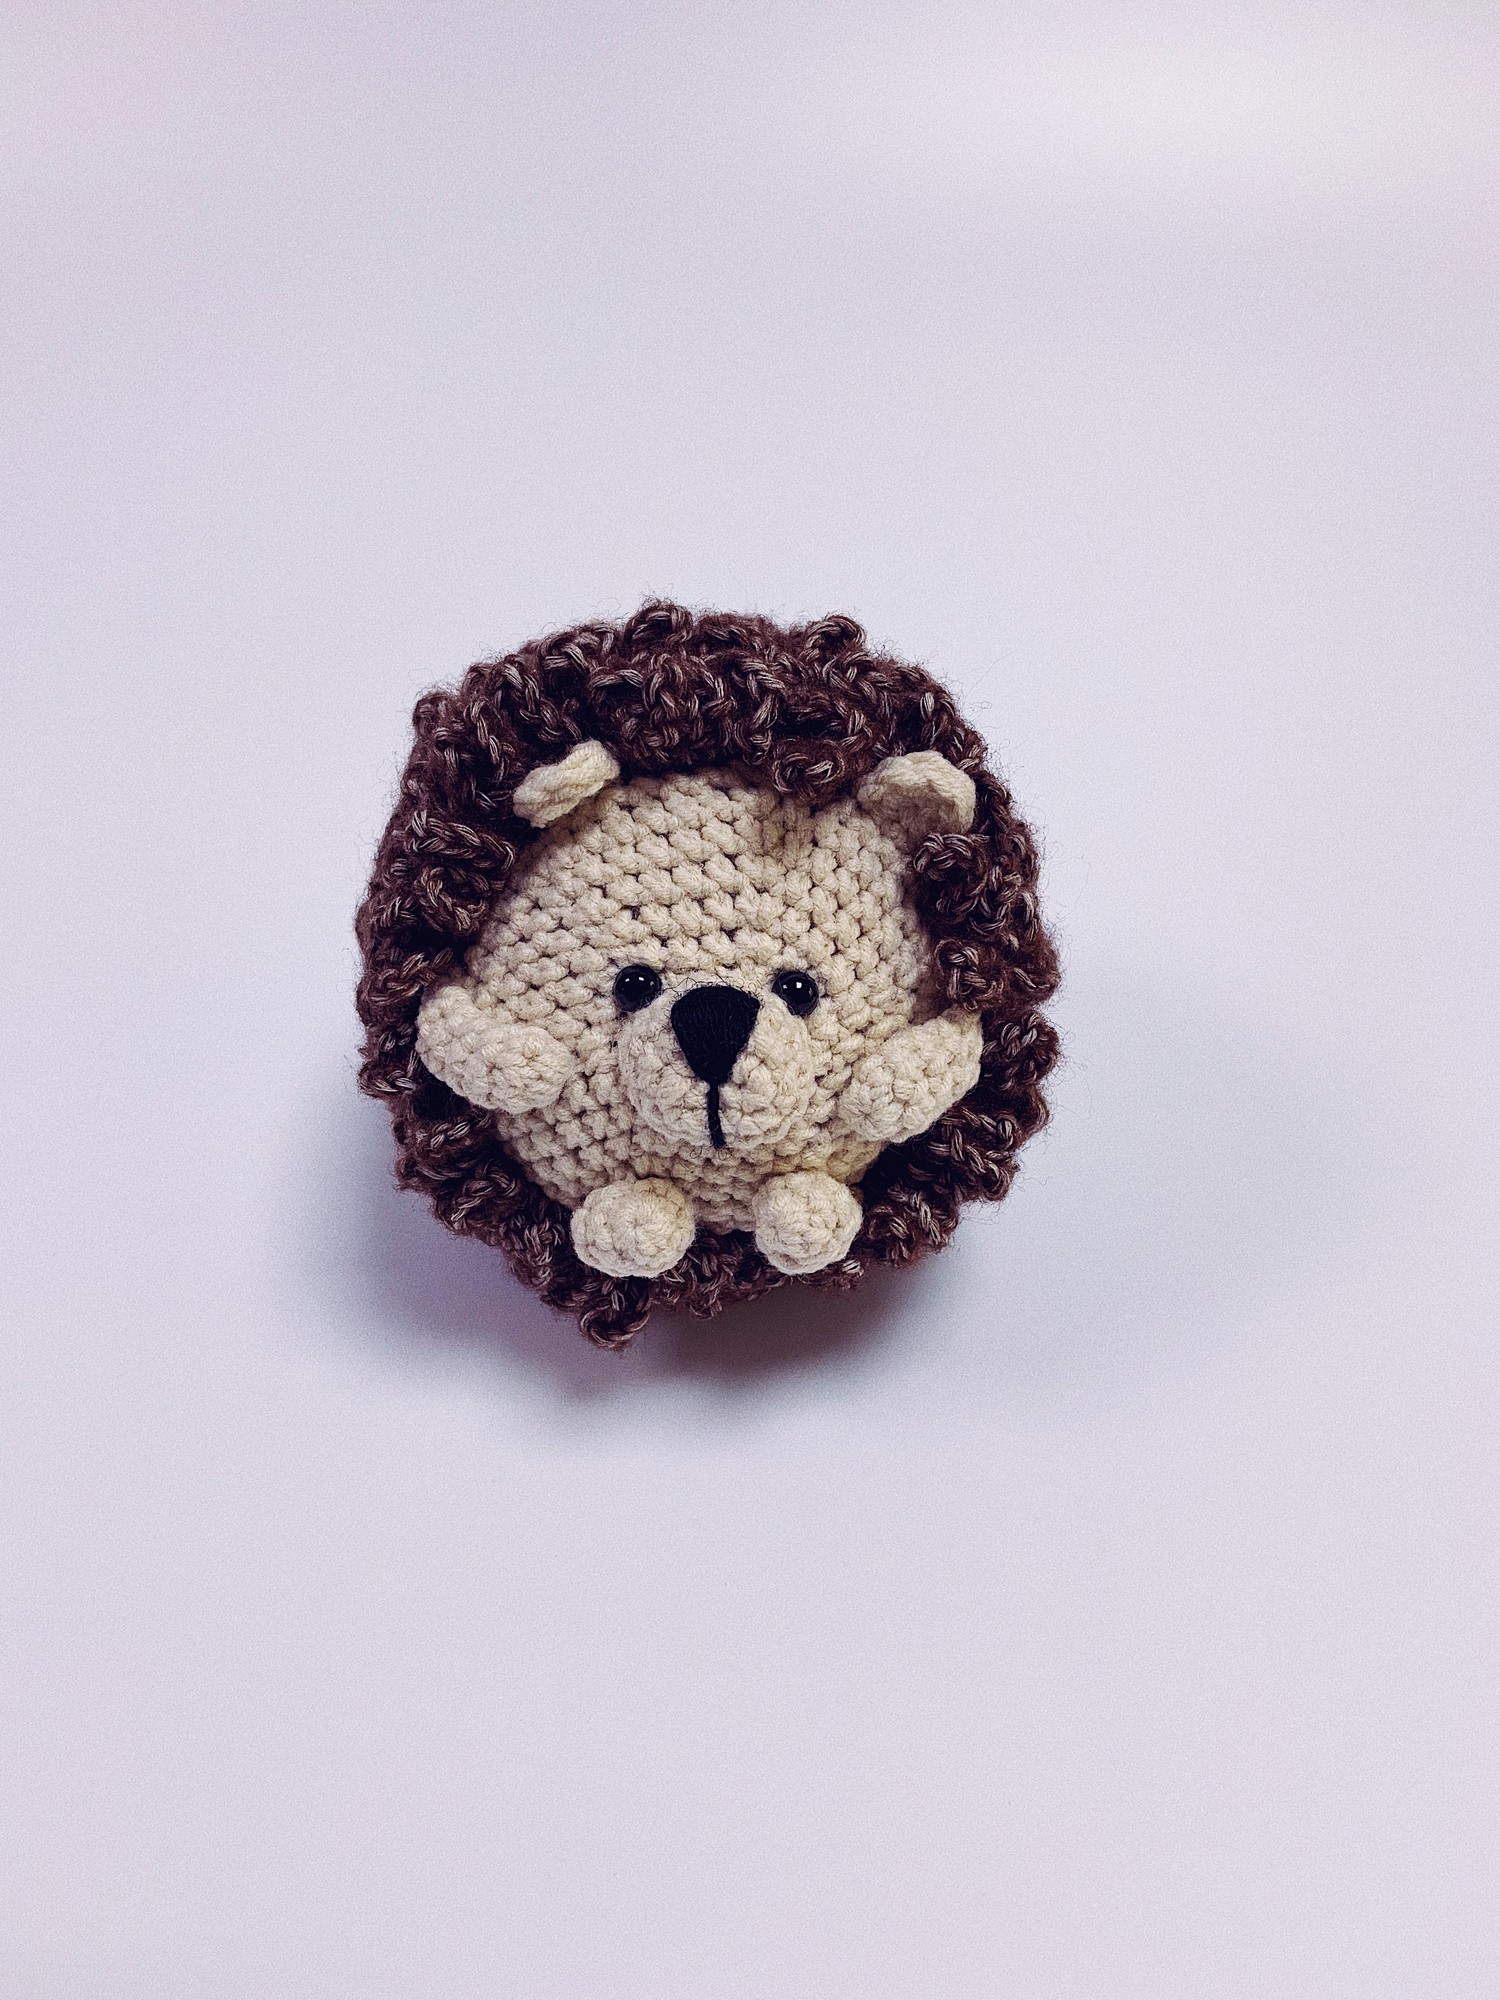 Hedgehog "Brown"